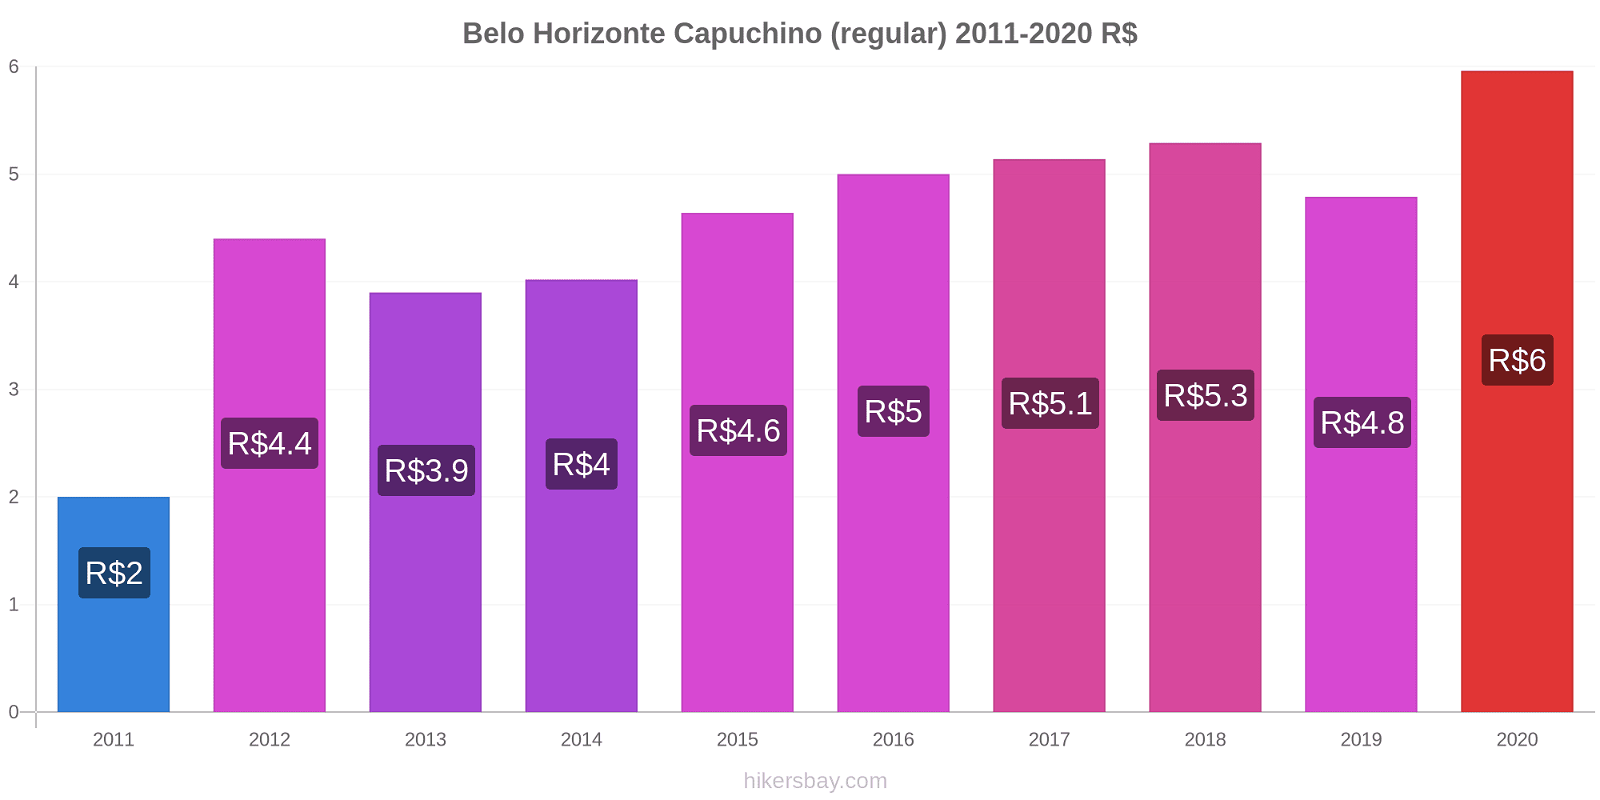 Belo Horizonte cambios de precios Capuchino (regular) hikersbay.com